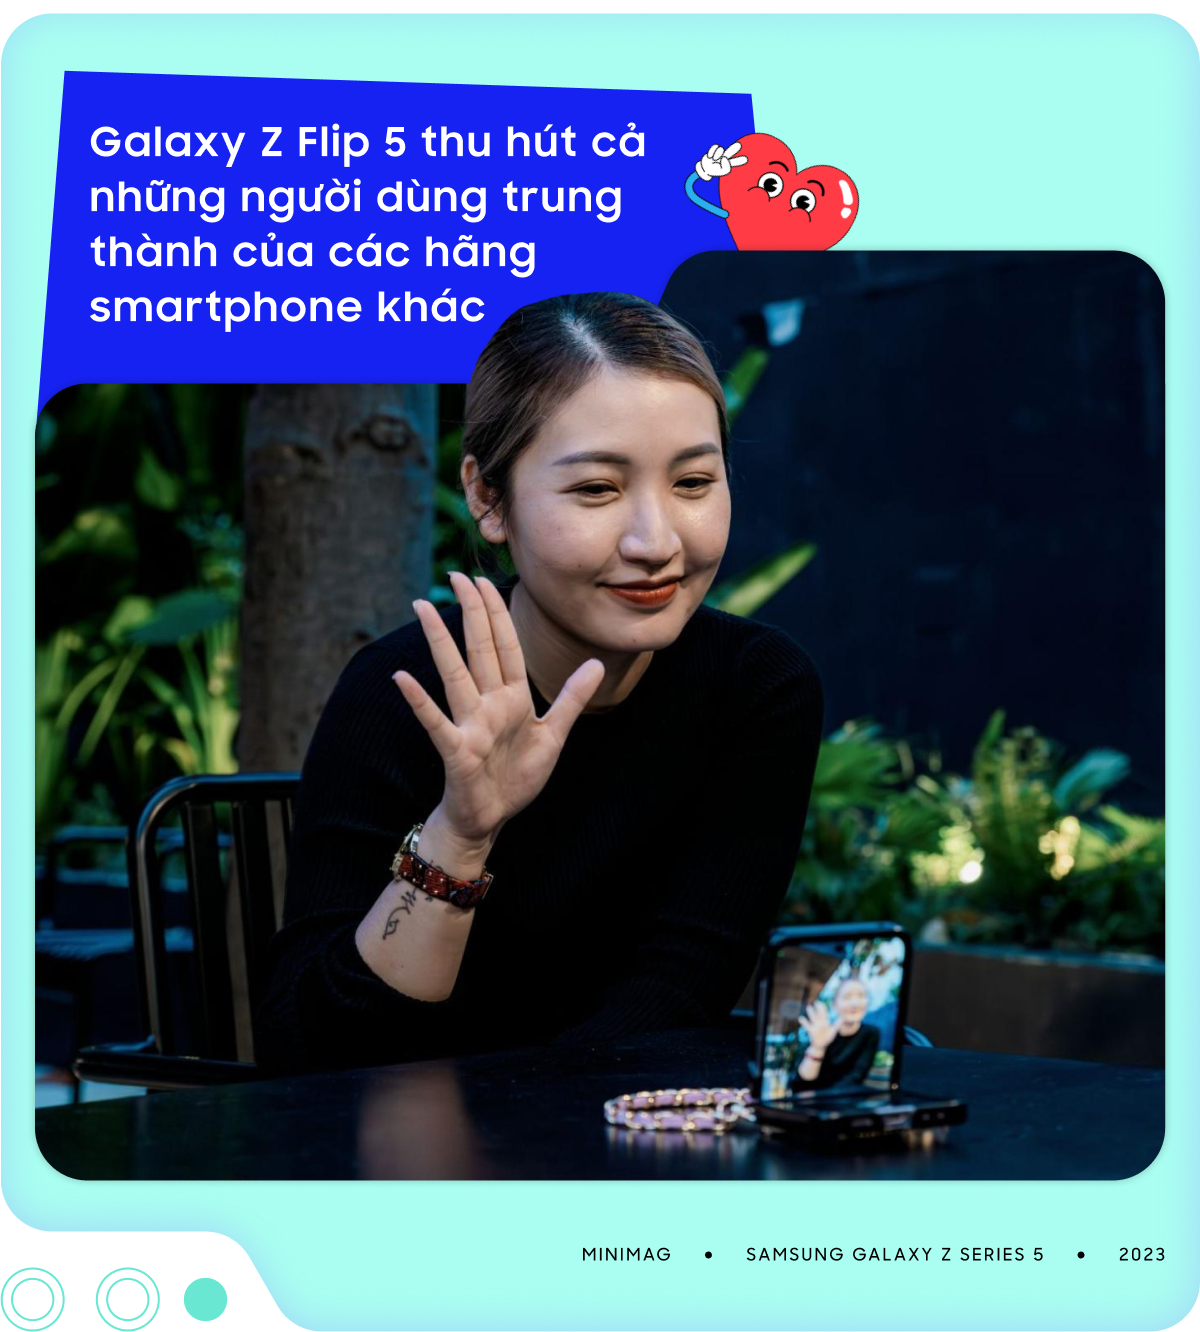 Galaxy Z Series 5 - Tuyên ngôn của sự tự do thể hiện bản sắc - Ảnh 9.